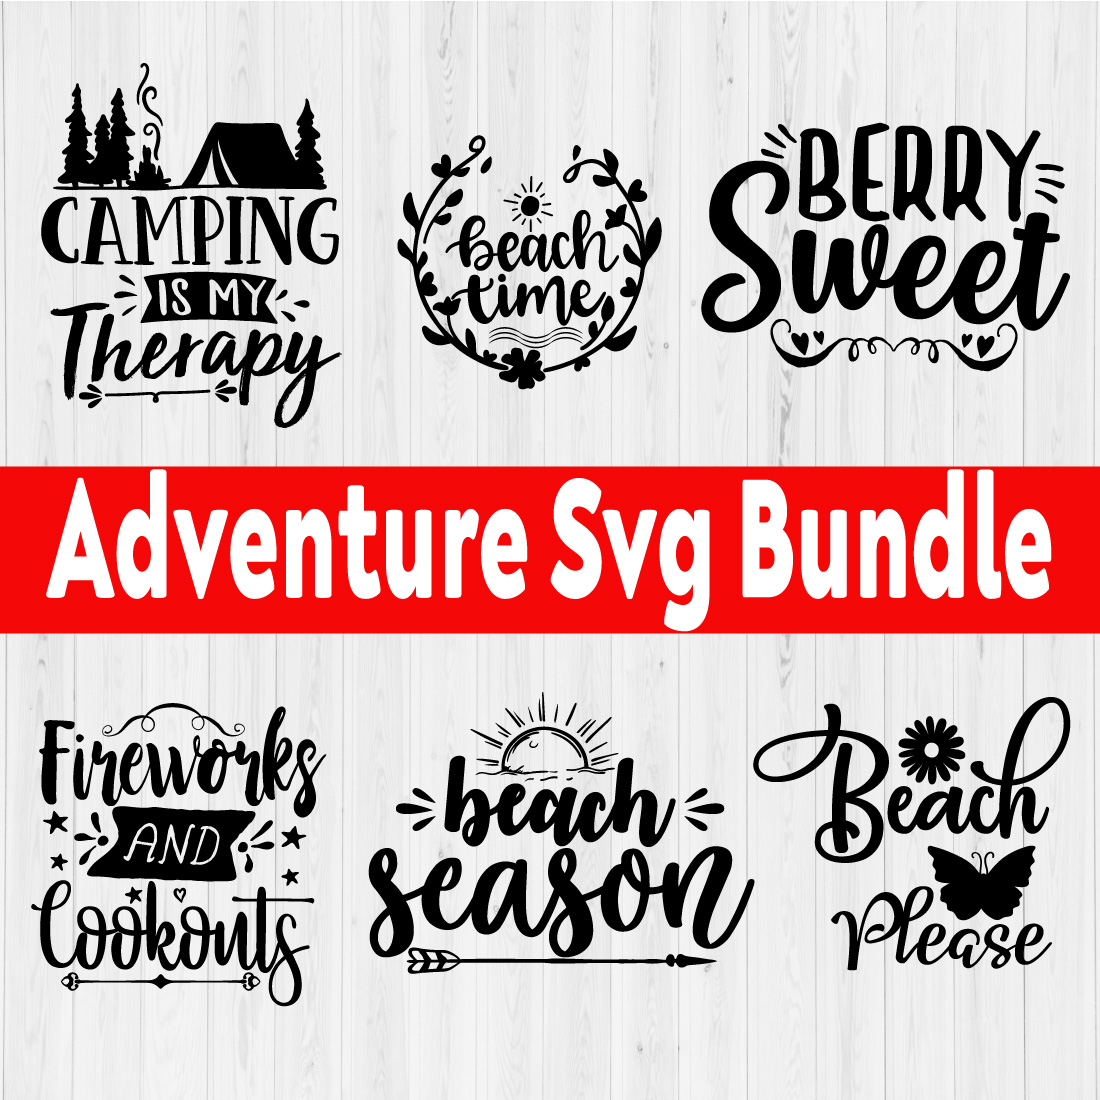 Adventure Svg Bundle Vol7 preview image.